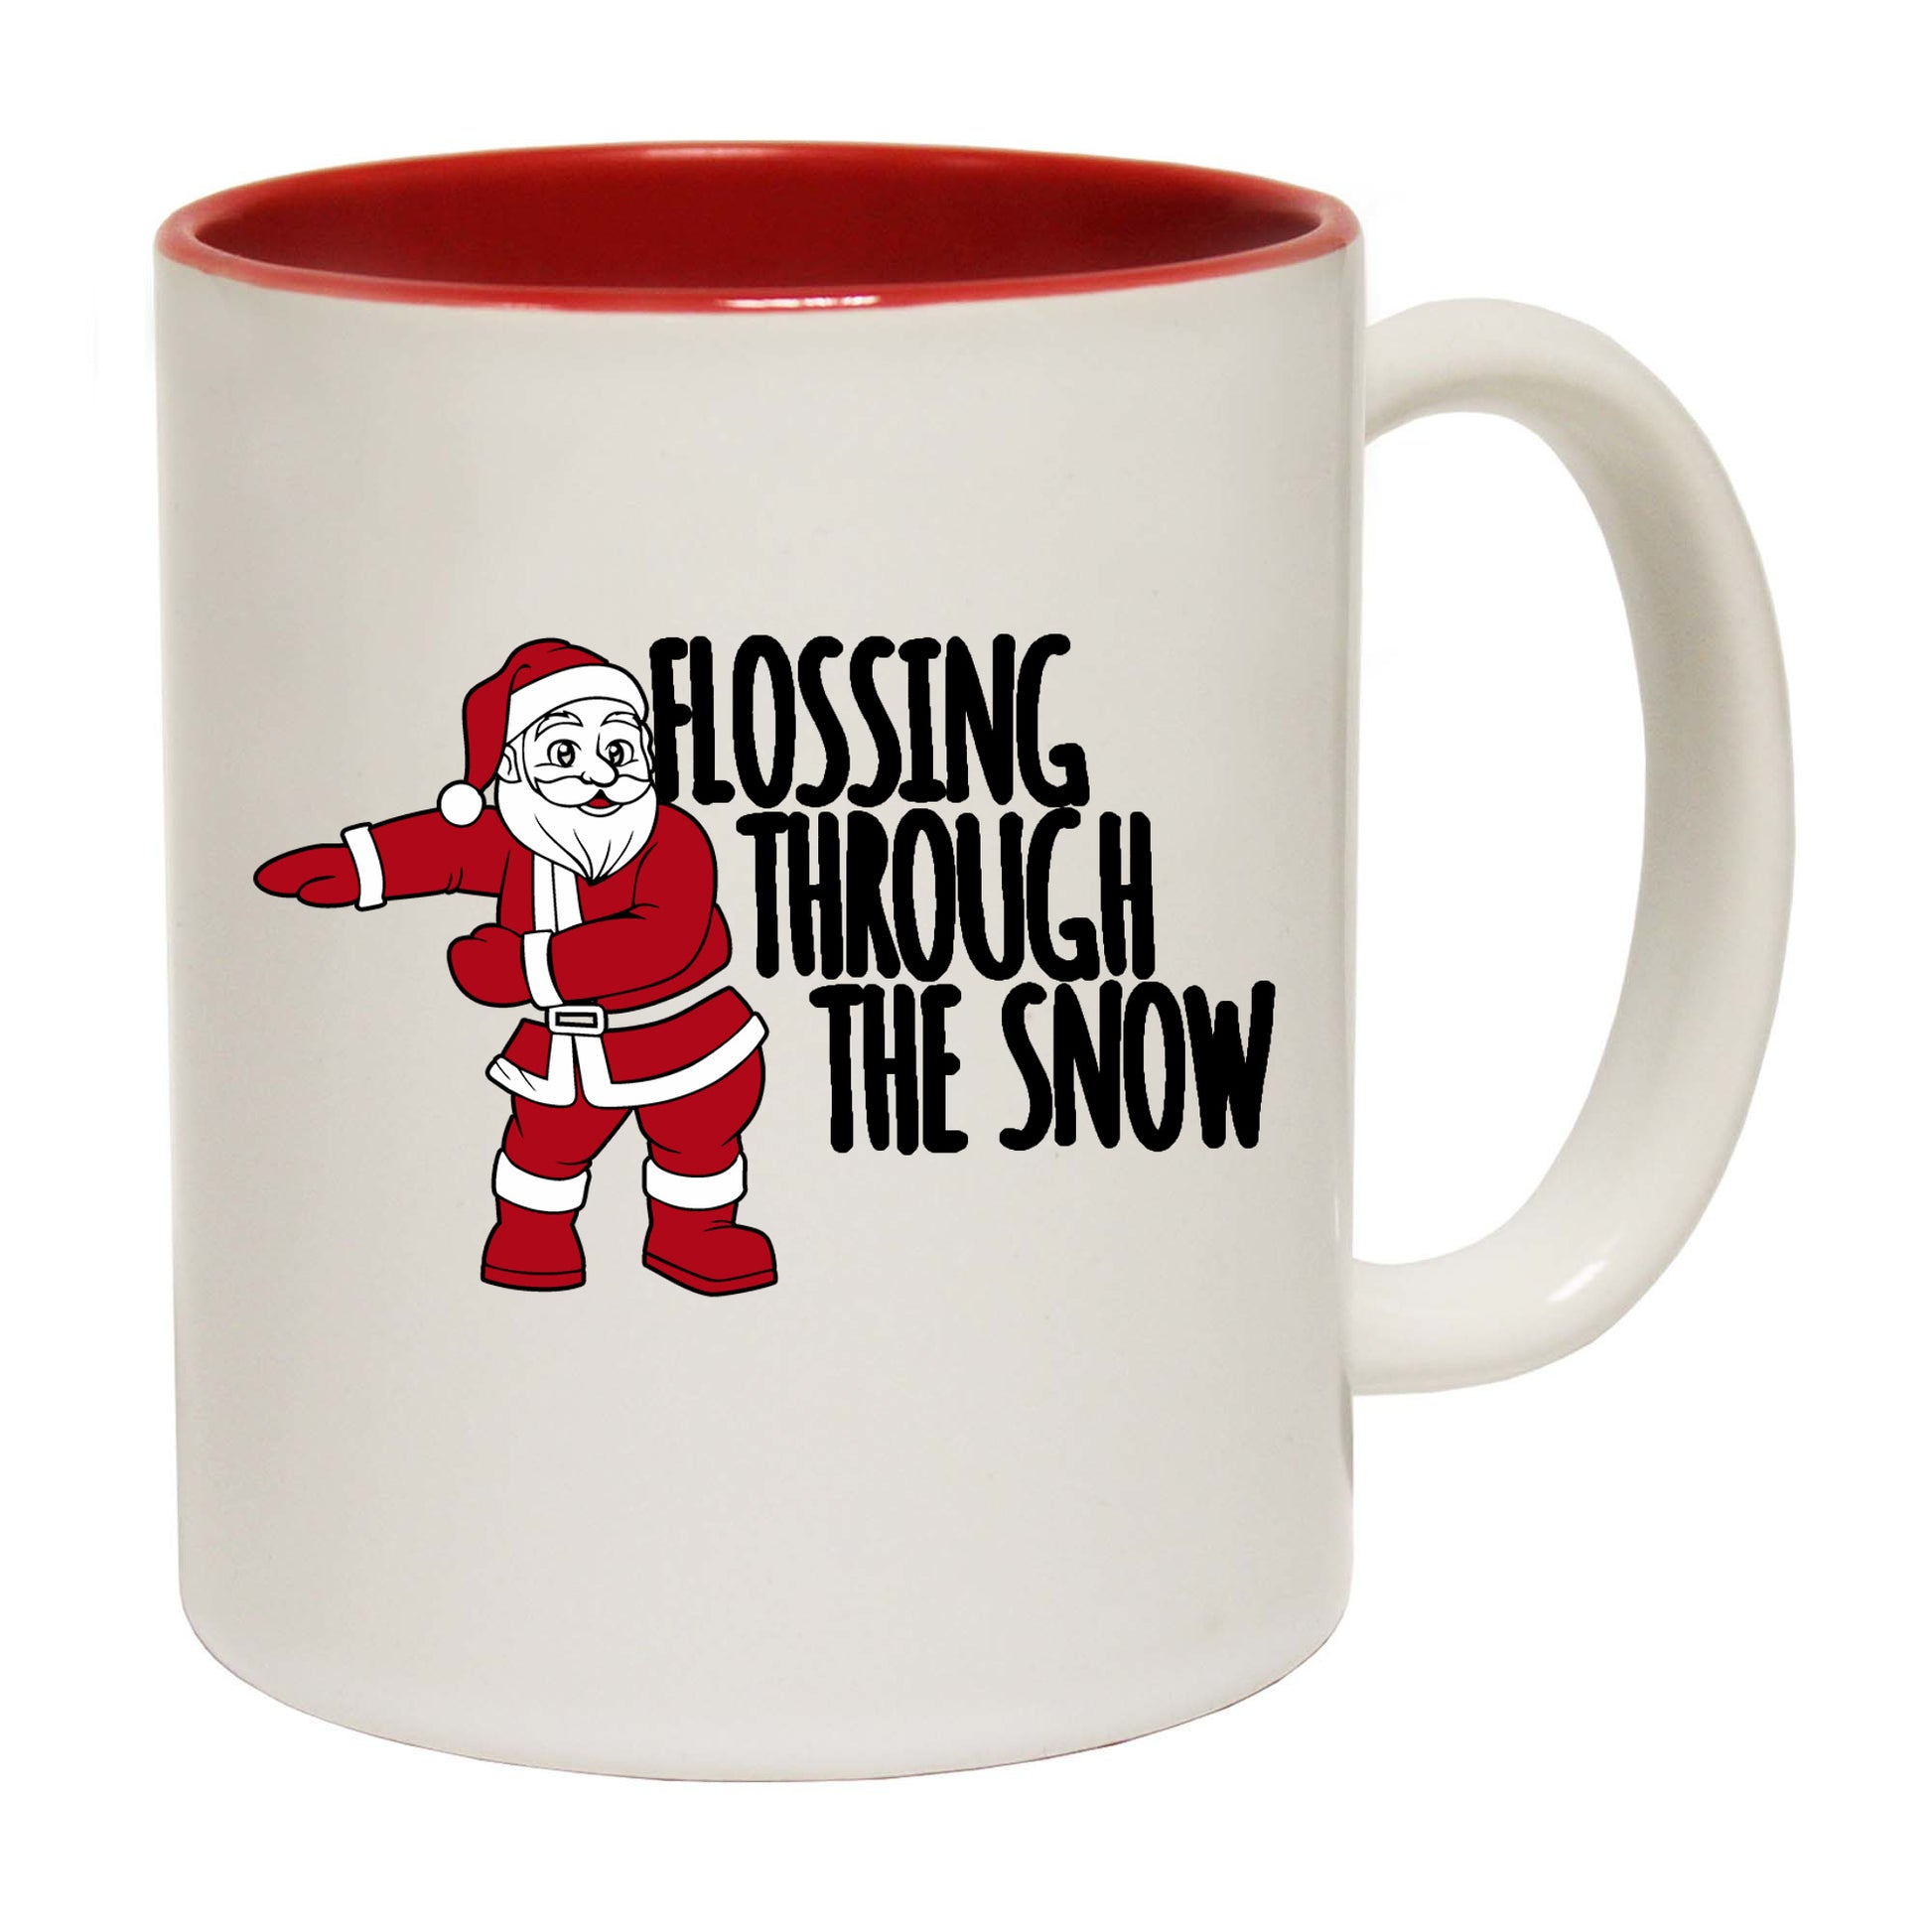 The Christmas Hub - Christmas Flossing Through The Snow - Funny Coffee Mug